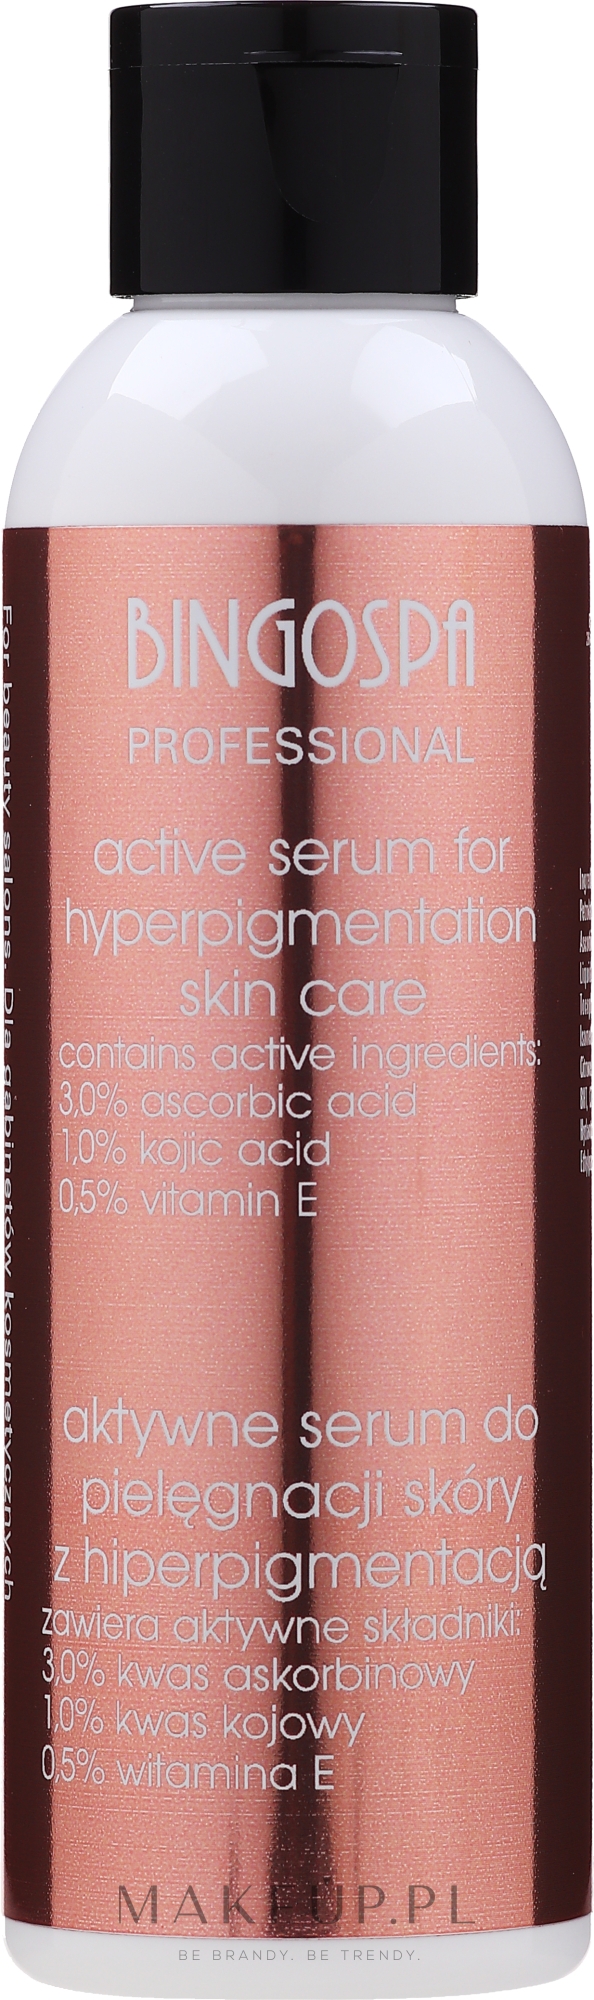 Aktywne serum do pielęgnacji skóry z hiperpigmentacją - BingoSpa Artline Decoloration Active Serum — Zdjęcie 135 g